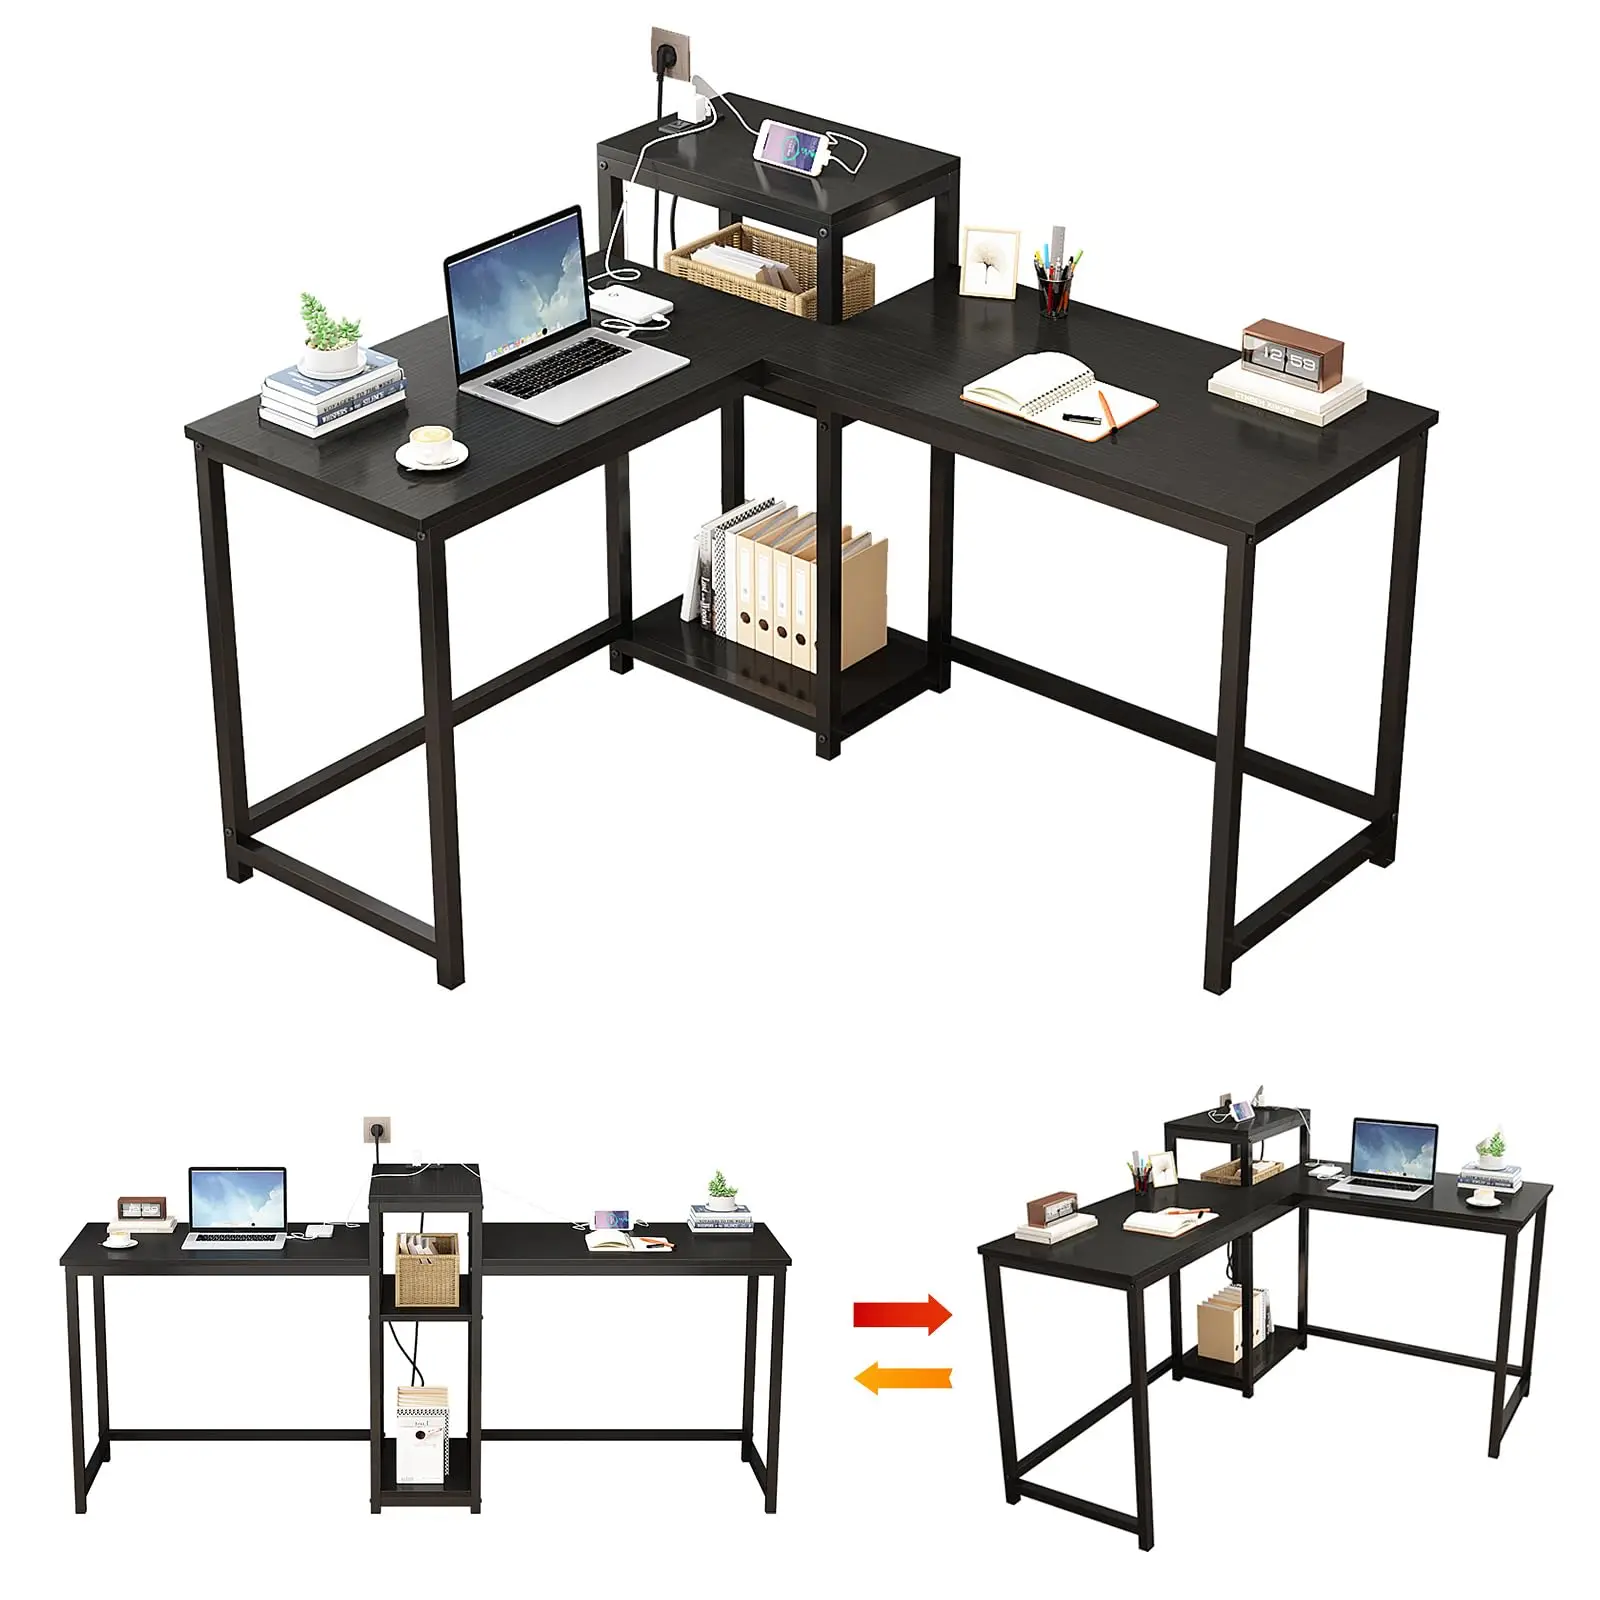 Reversible Computer Desk with Power Outlets & File Cabinet,L Shaped Desk with Storage Shelves,Gaming Desk Corner Desk